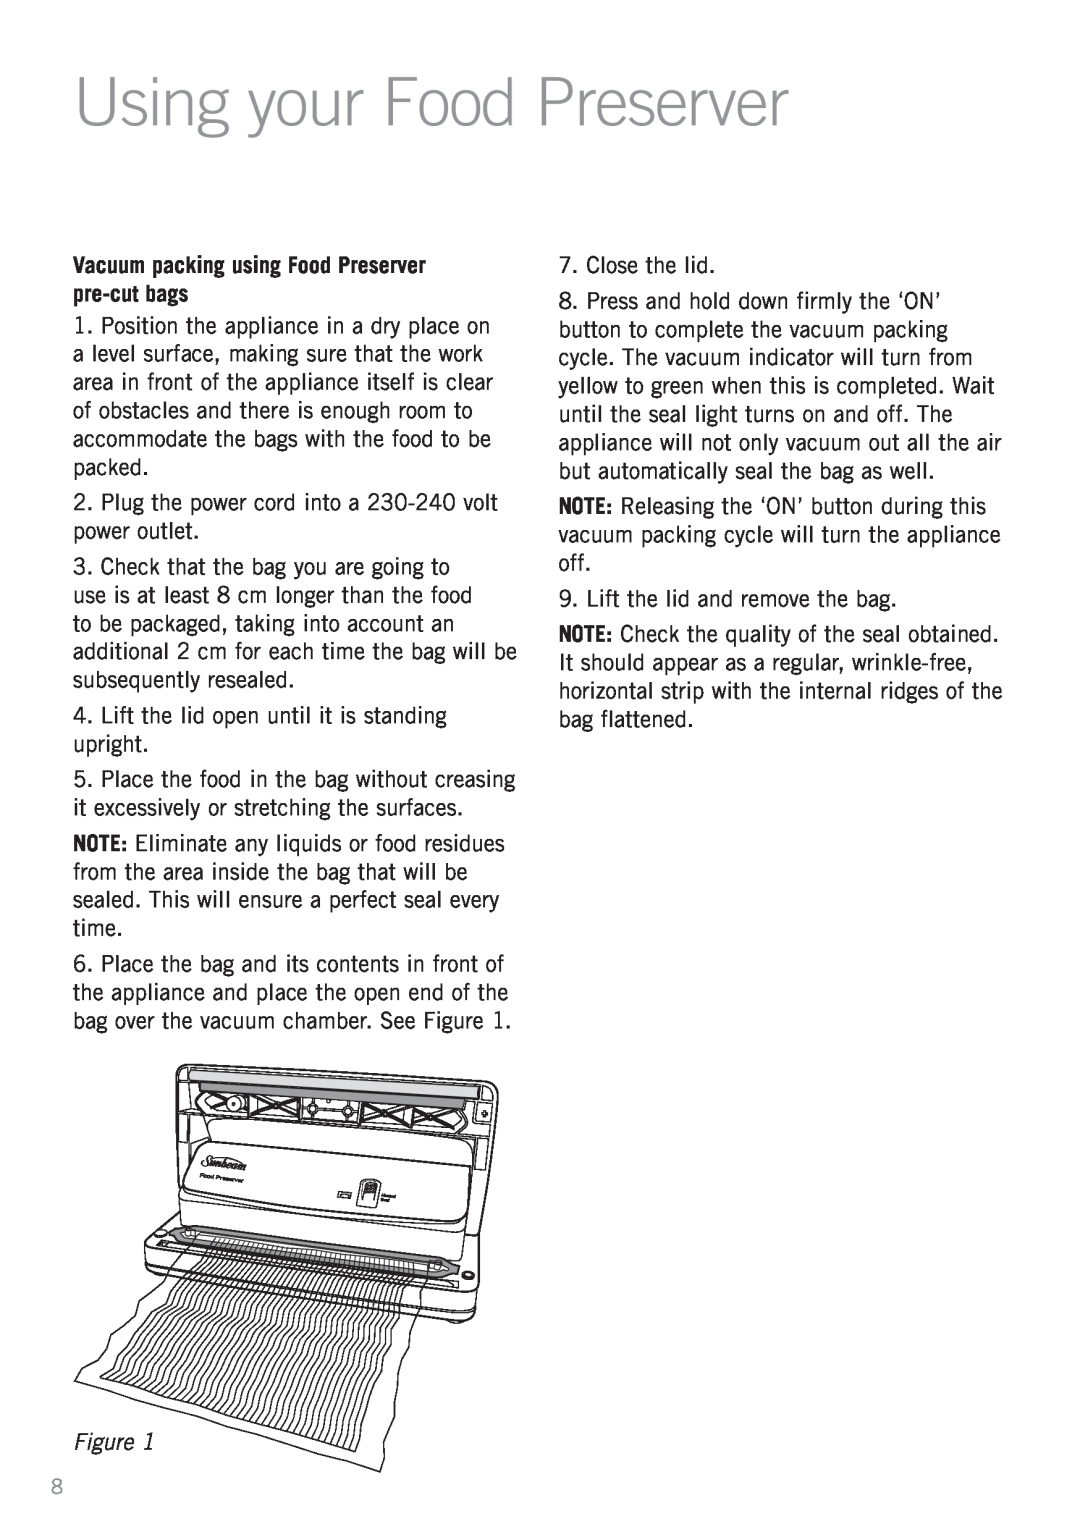 Sunbeam VS5200 manual Using your Food Preserver, Vacuum packing using Food Preserver pre-cutbags 